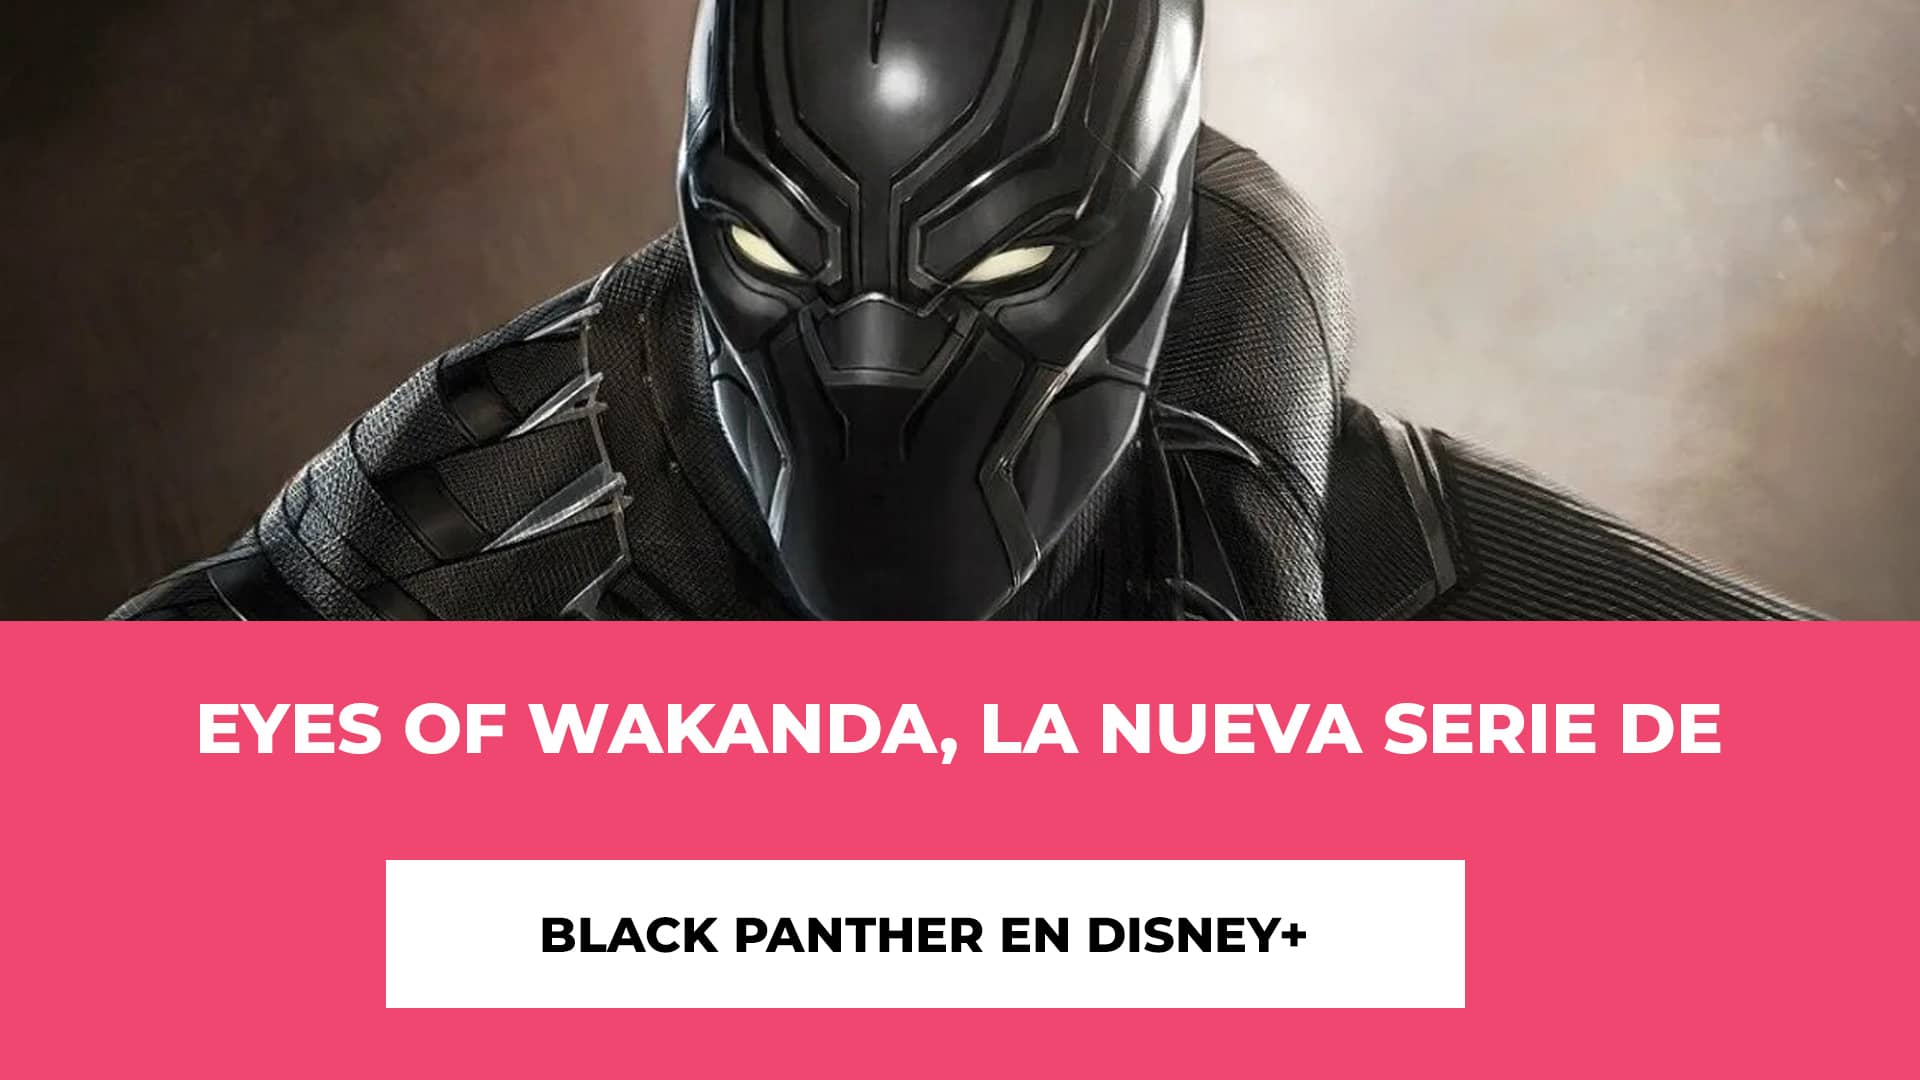 Eyes of Wakanda, la nueva serie de Black Panther en Disney+ - ¿Qué Pueden Esperar los Fans? - Consejos para los Fans - Fecha de Estreno